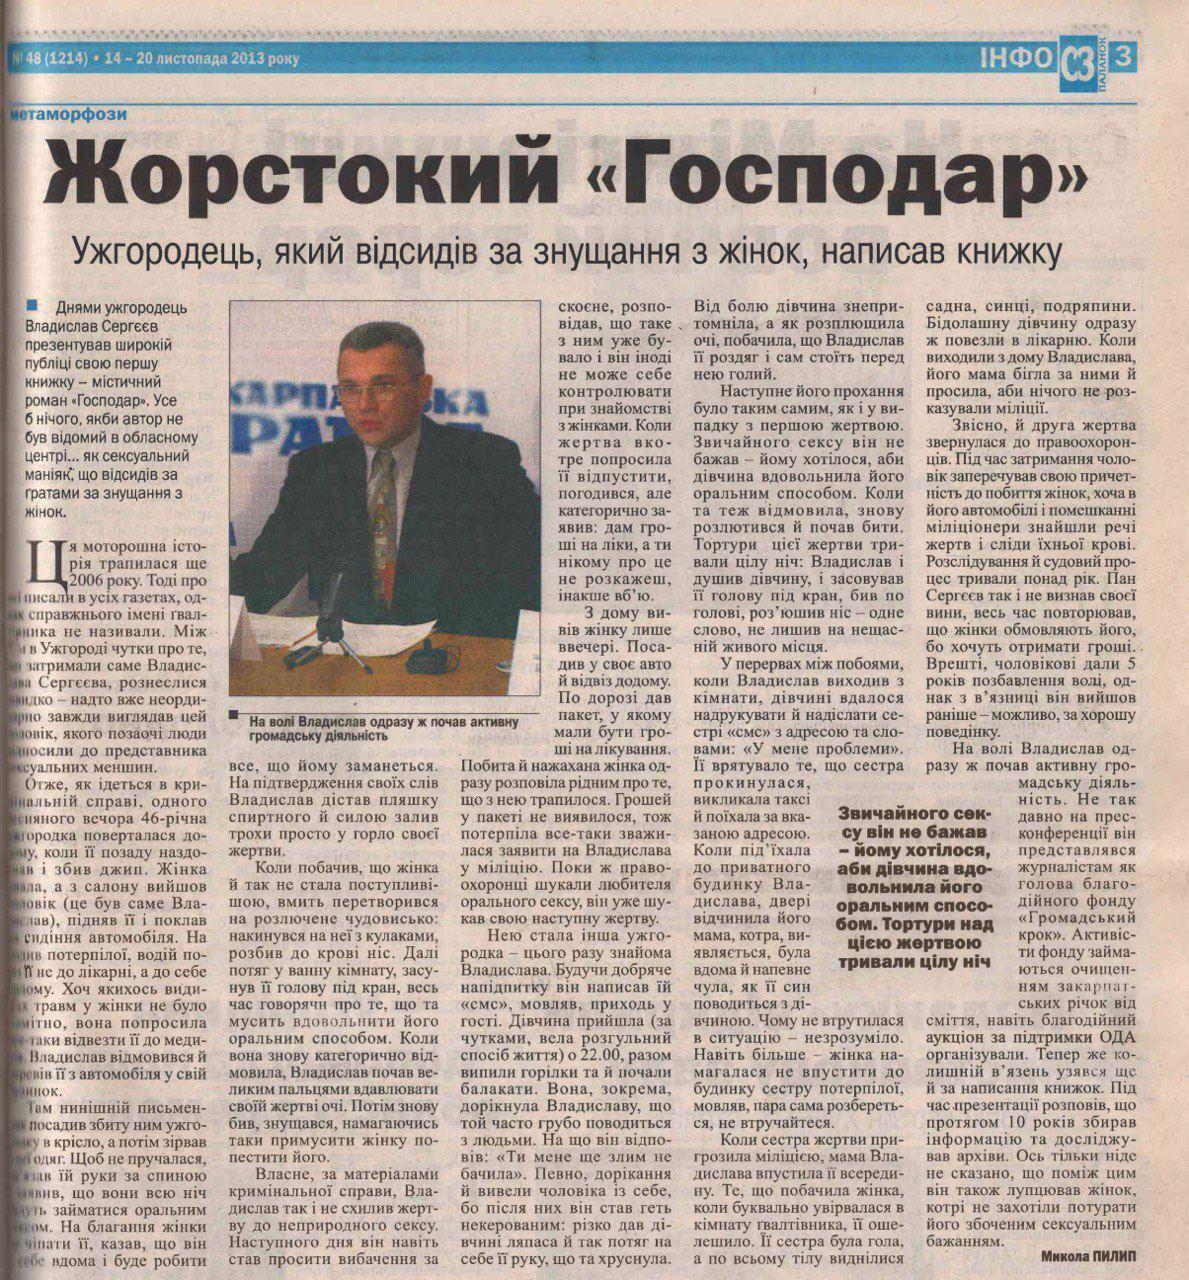 Стаття про Владислава Сергєєва з газети "Старий замок" за 2013 рік.